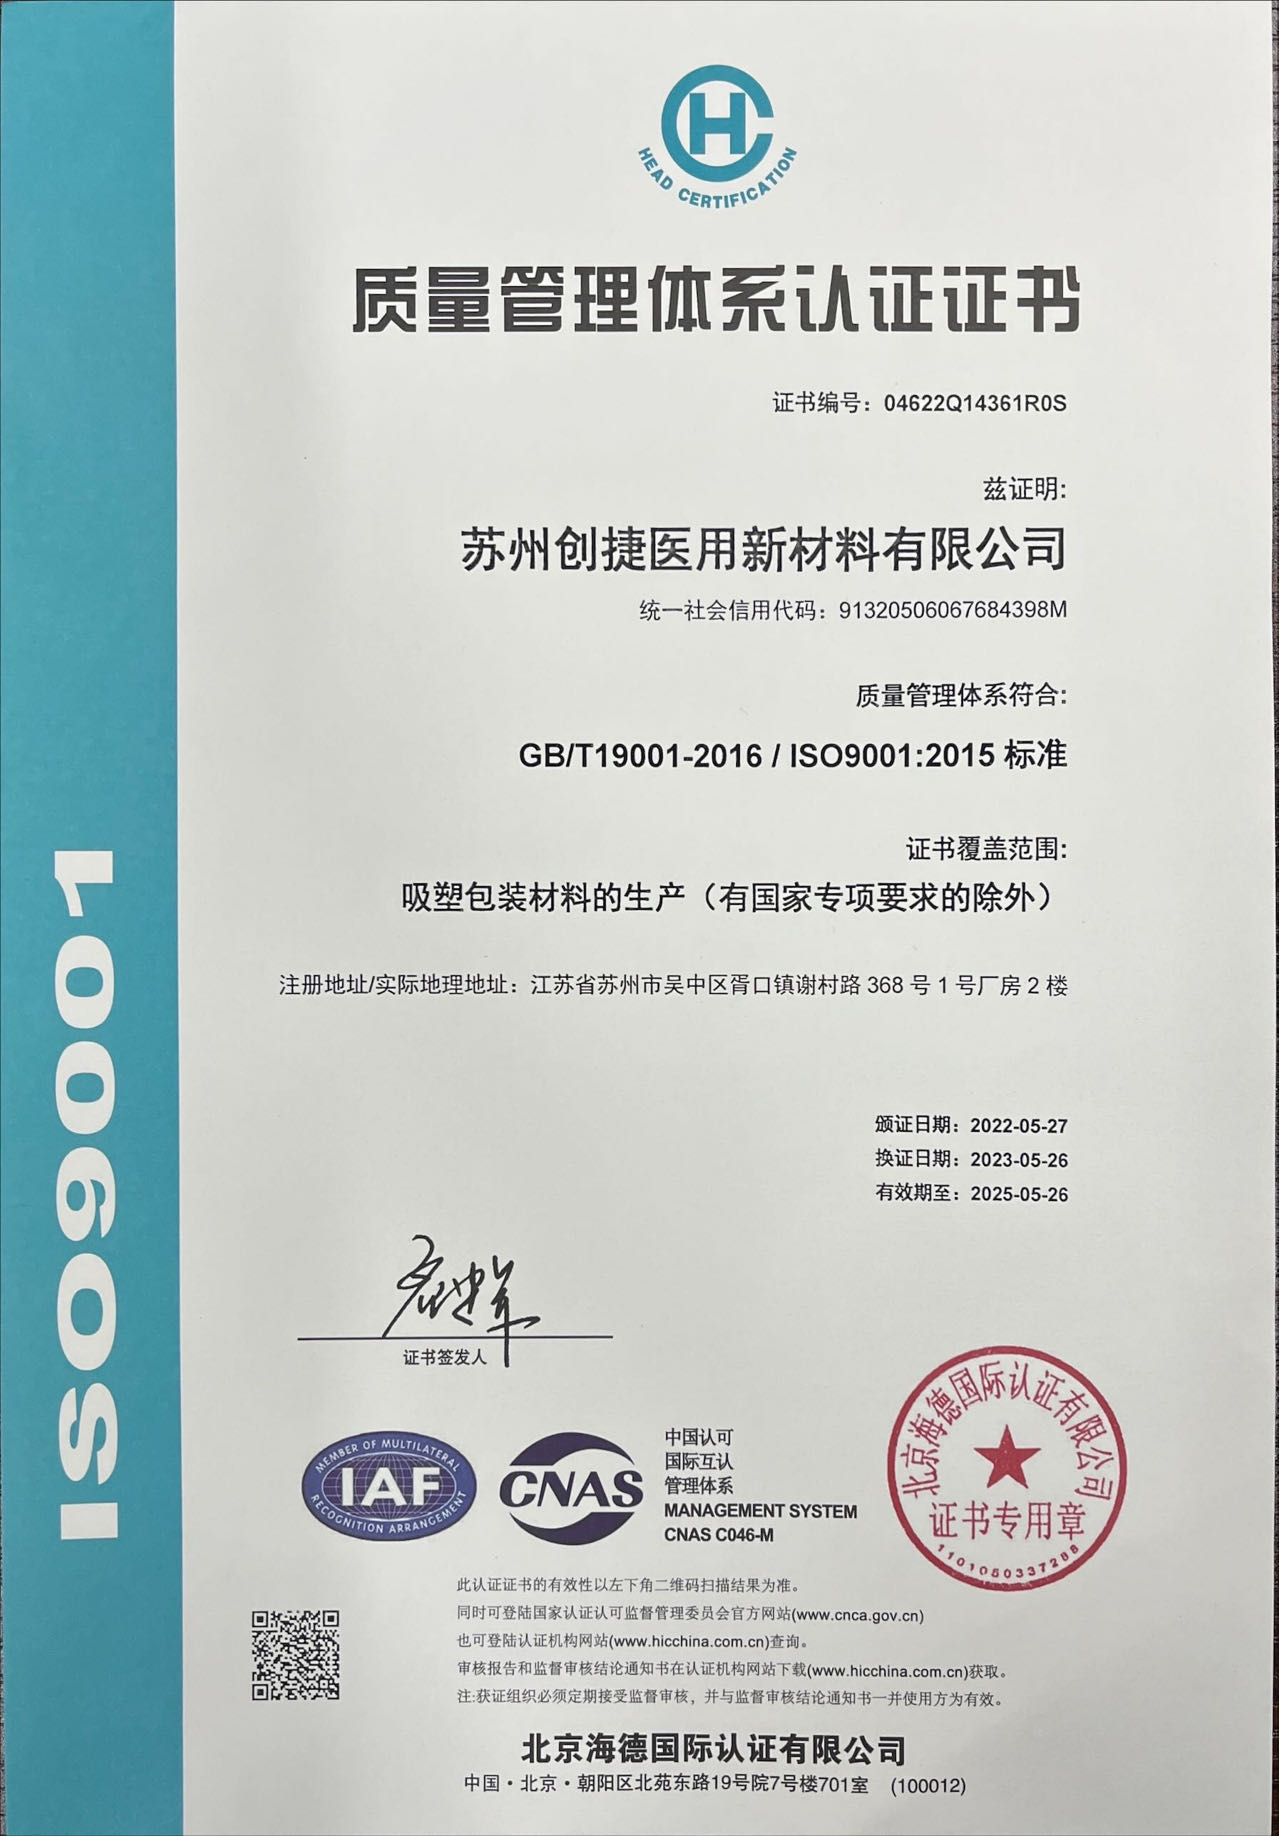 蘇州創捷醫用新材料有限公司ISO9001:2015質量管理體系認證證書已更新。